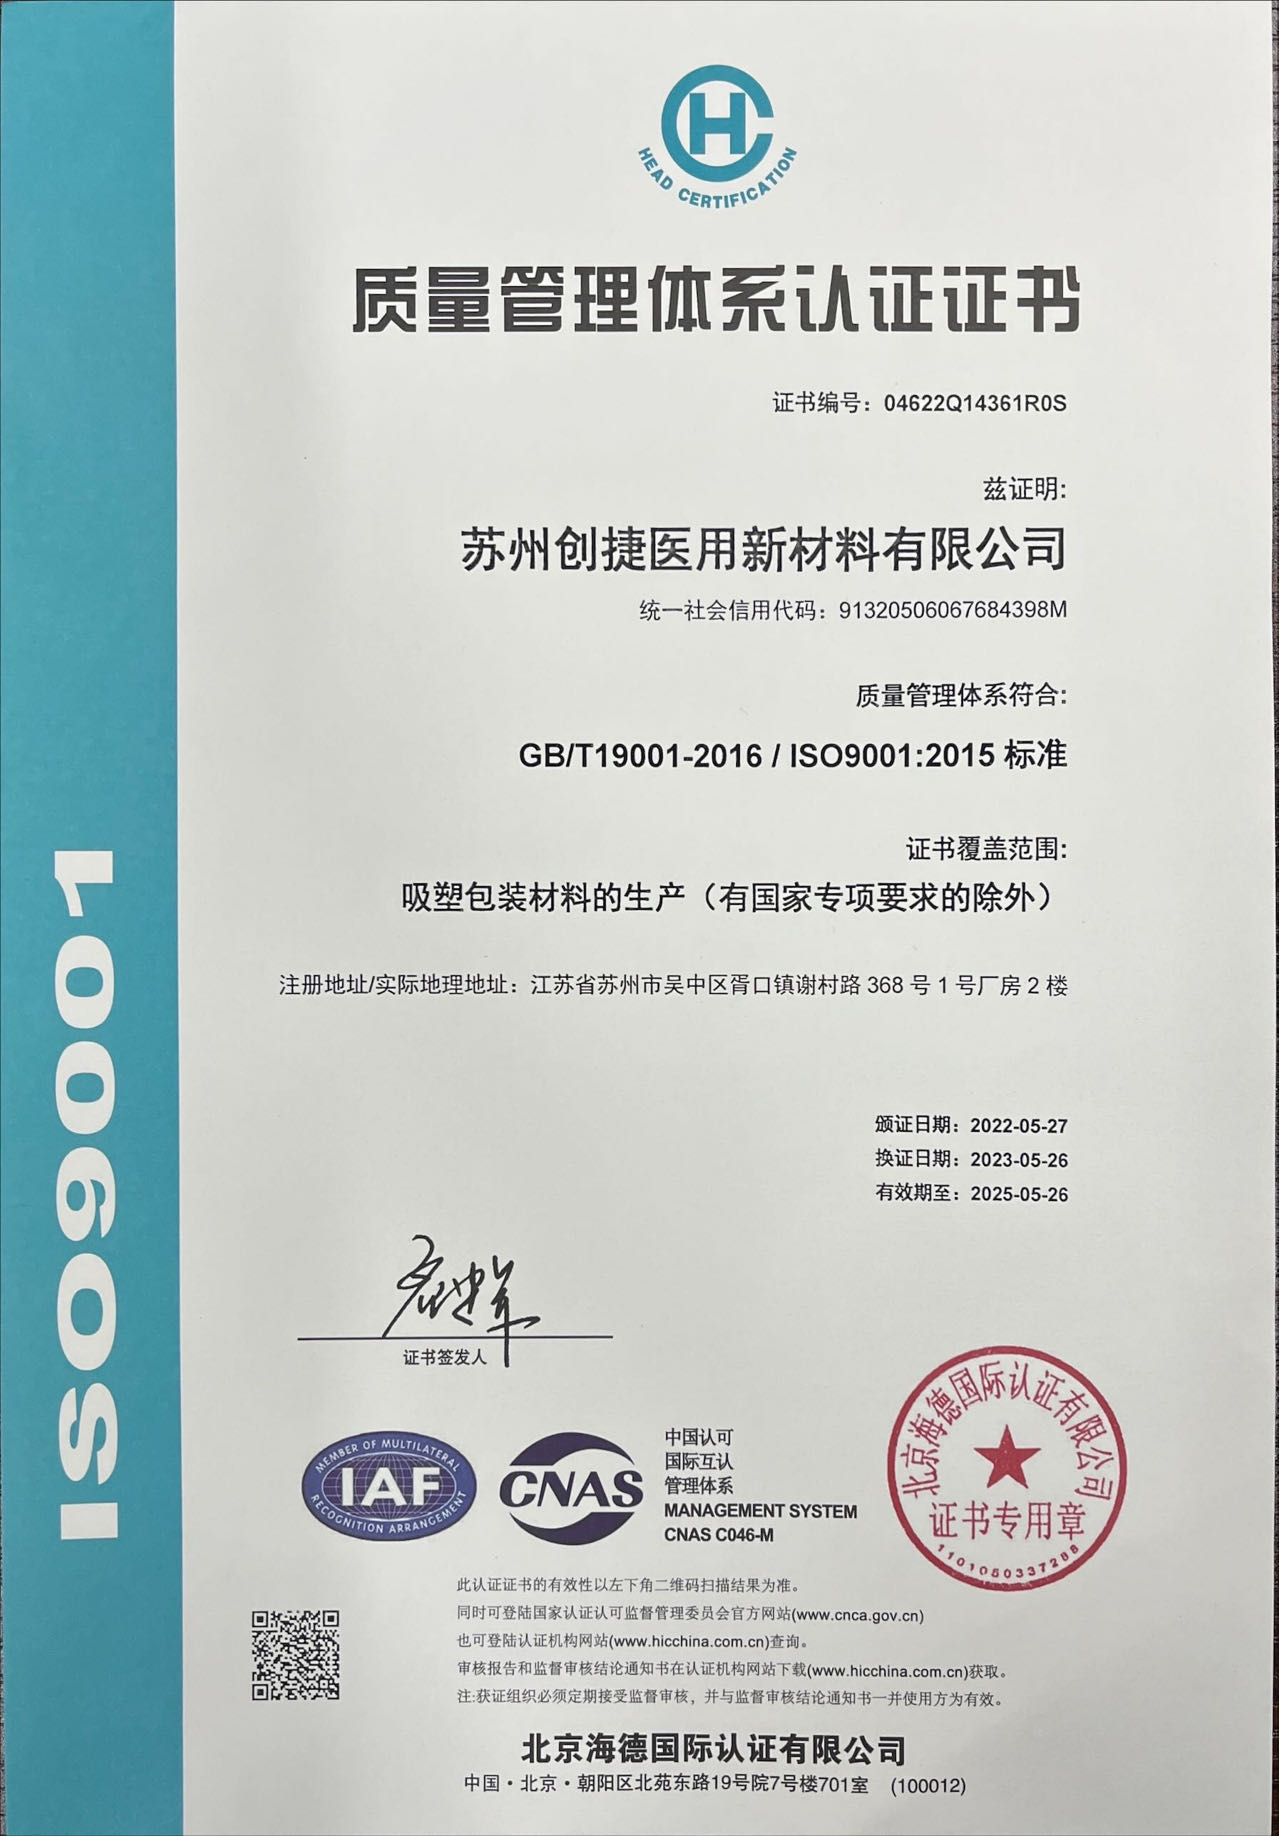 蘇州創捷醫用新材料有限公司ISO9001:2015質量管理體系認證證書已更新。